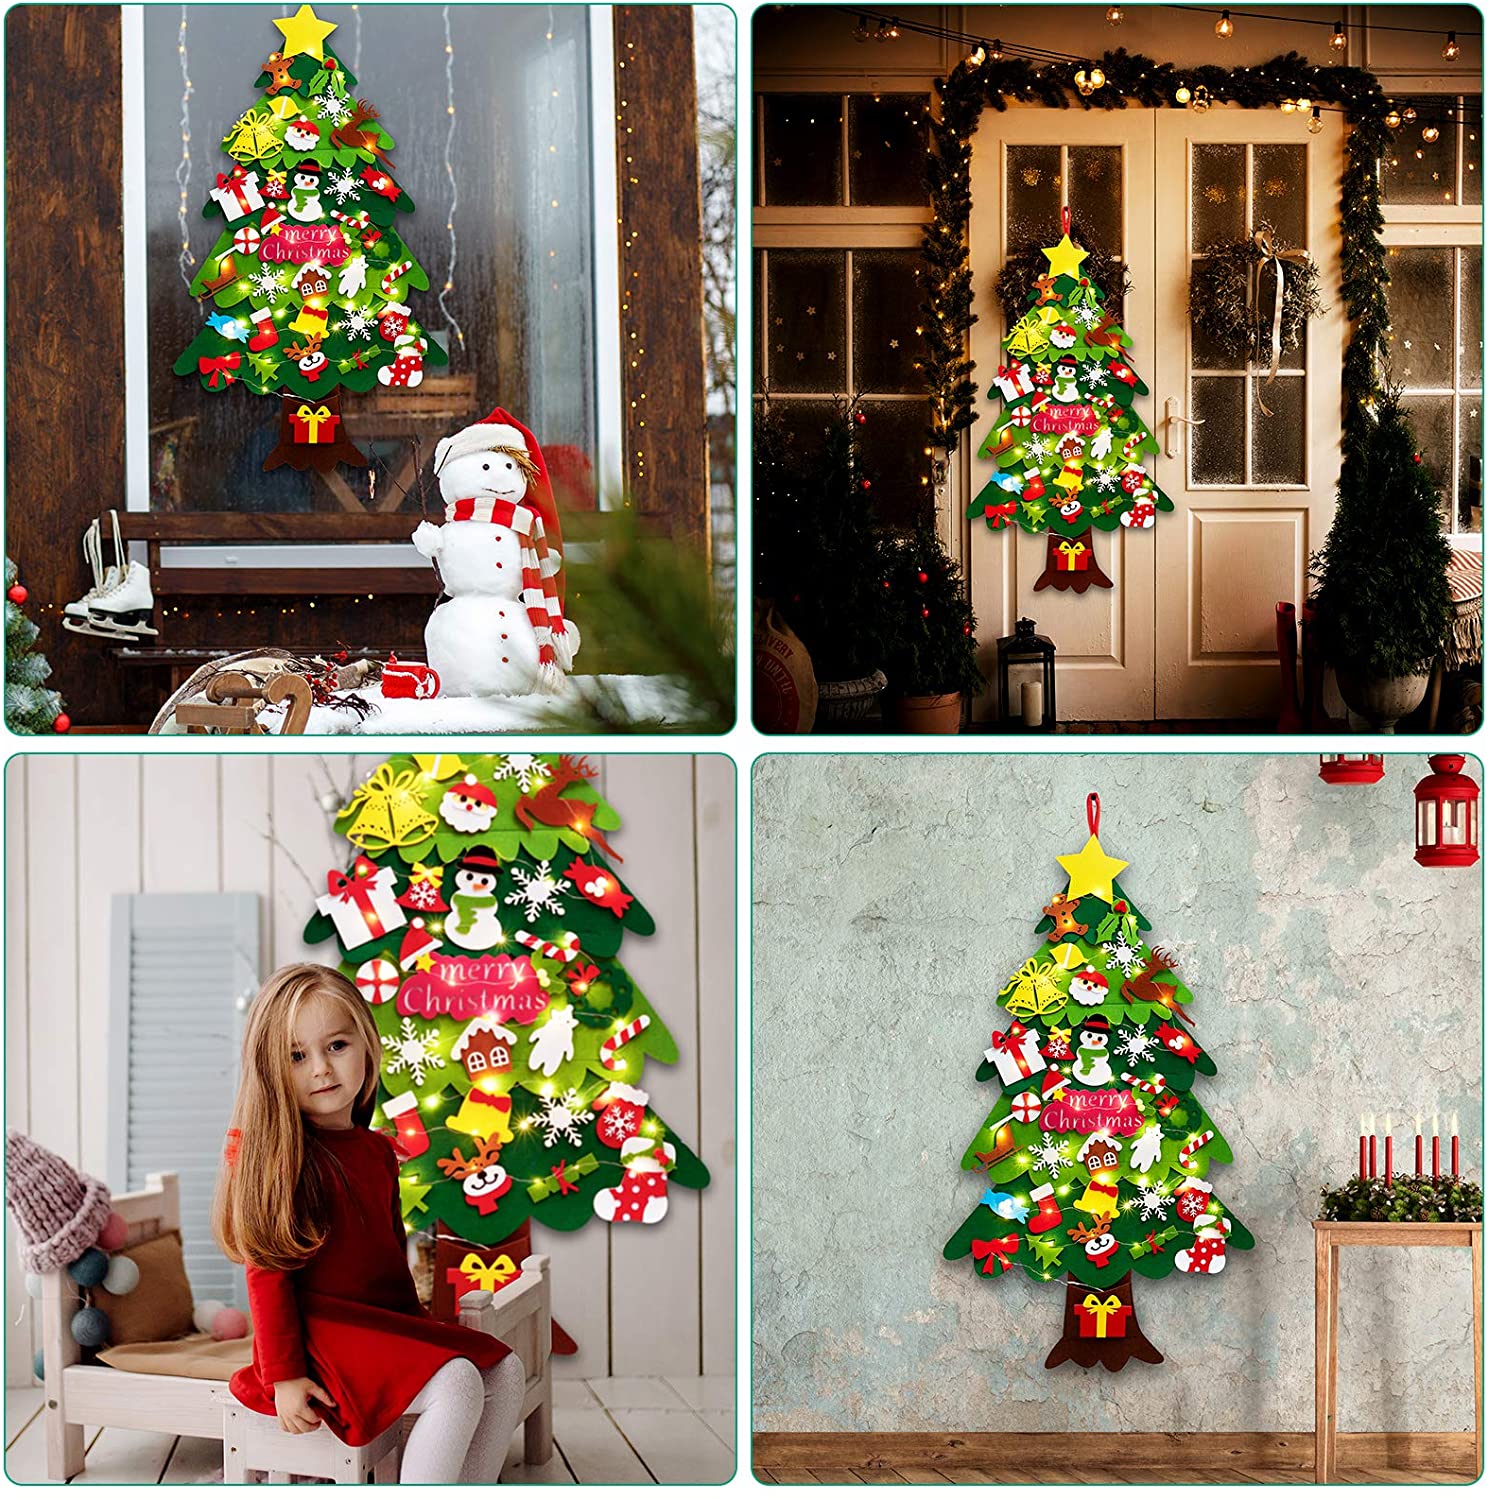 Felt Christmas Tree For Kids Wall With Snowflake Lights